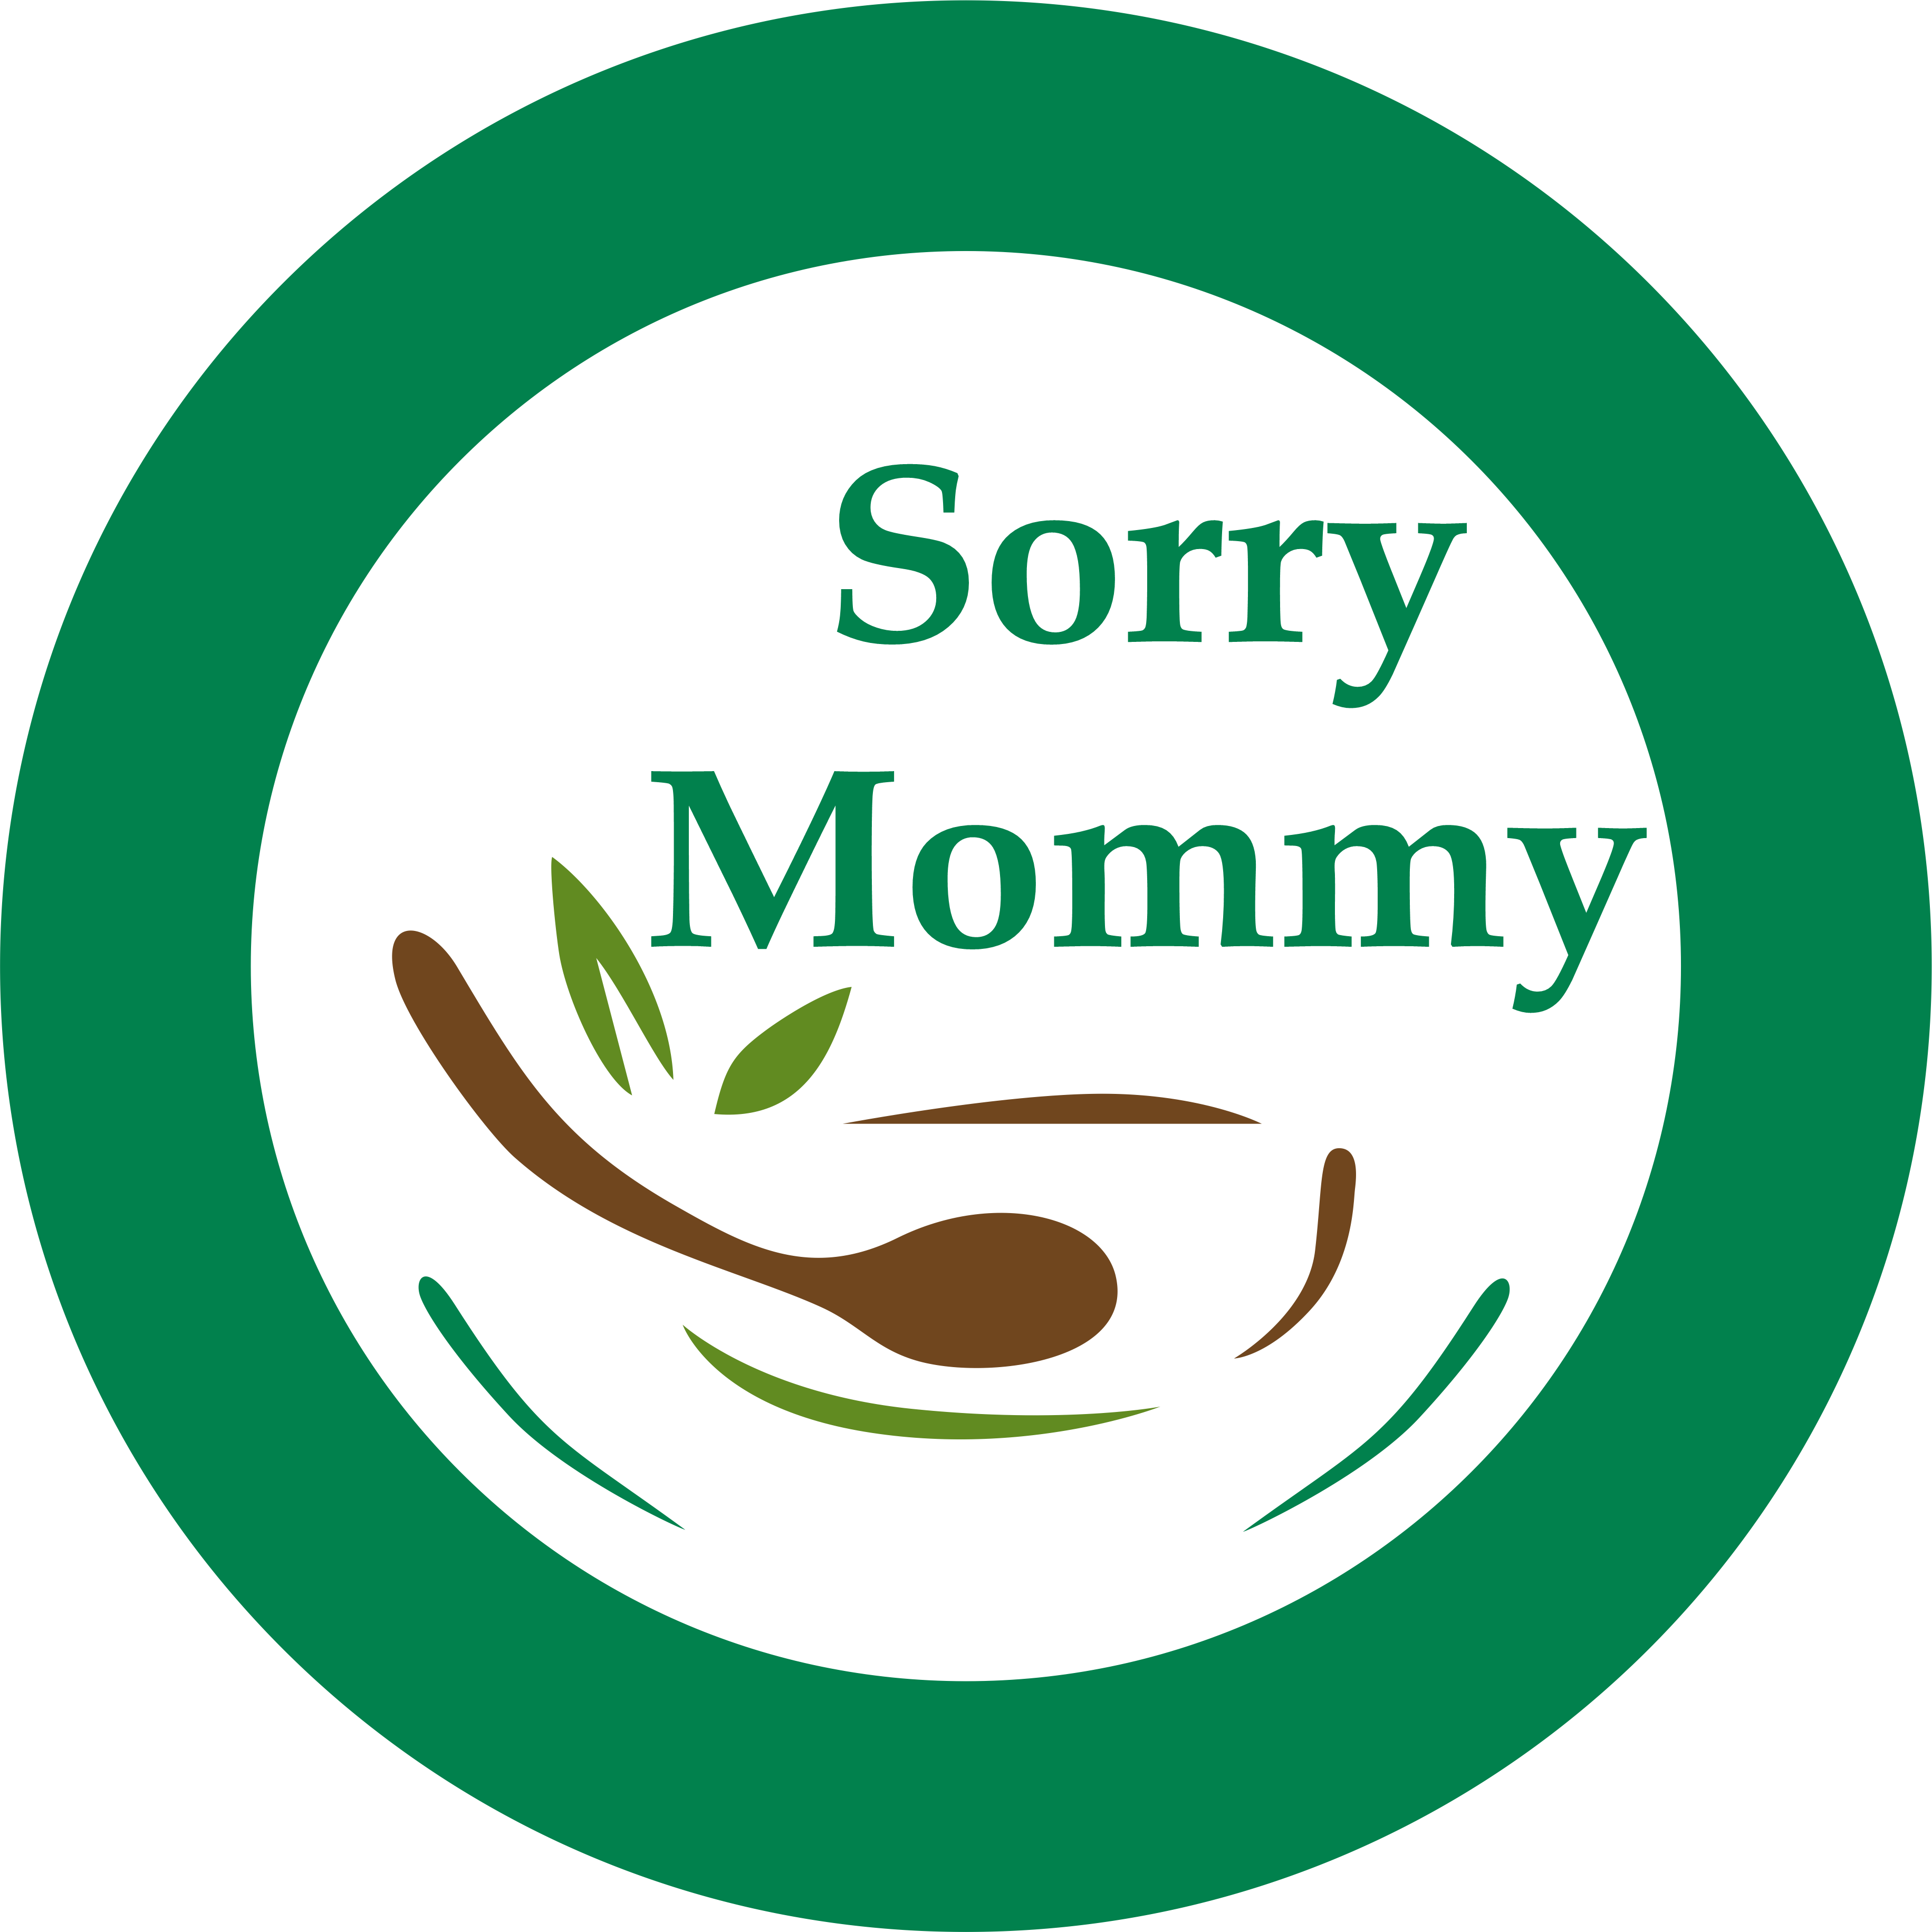 neeko - Mommy sorry mommy sorry mommy sorry 😂😂